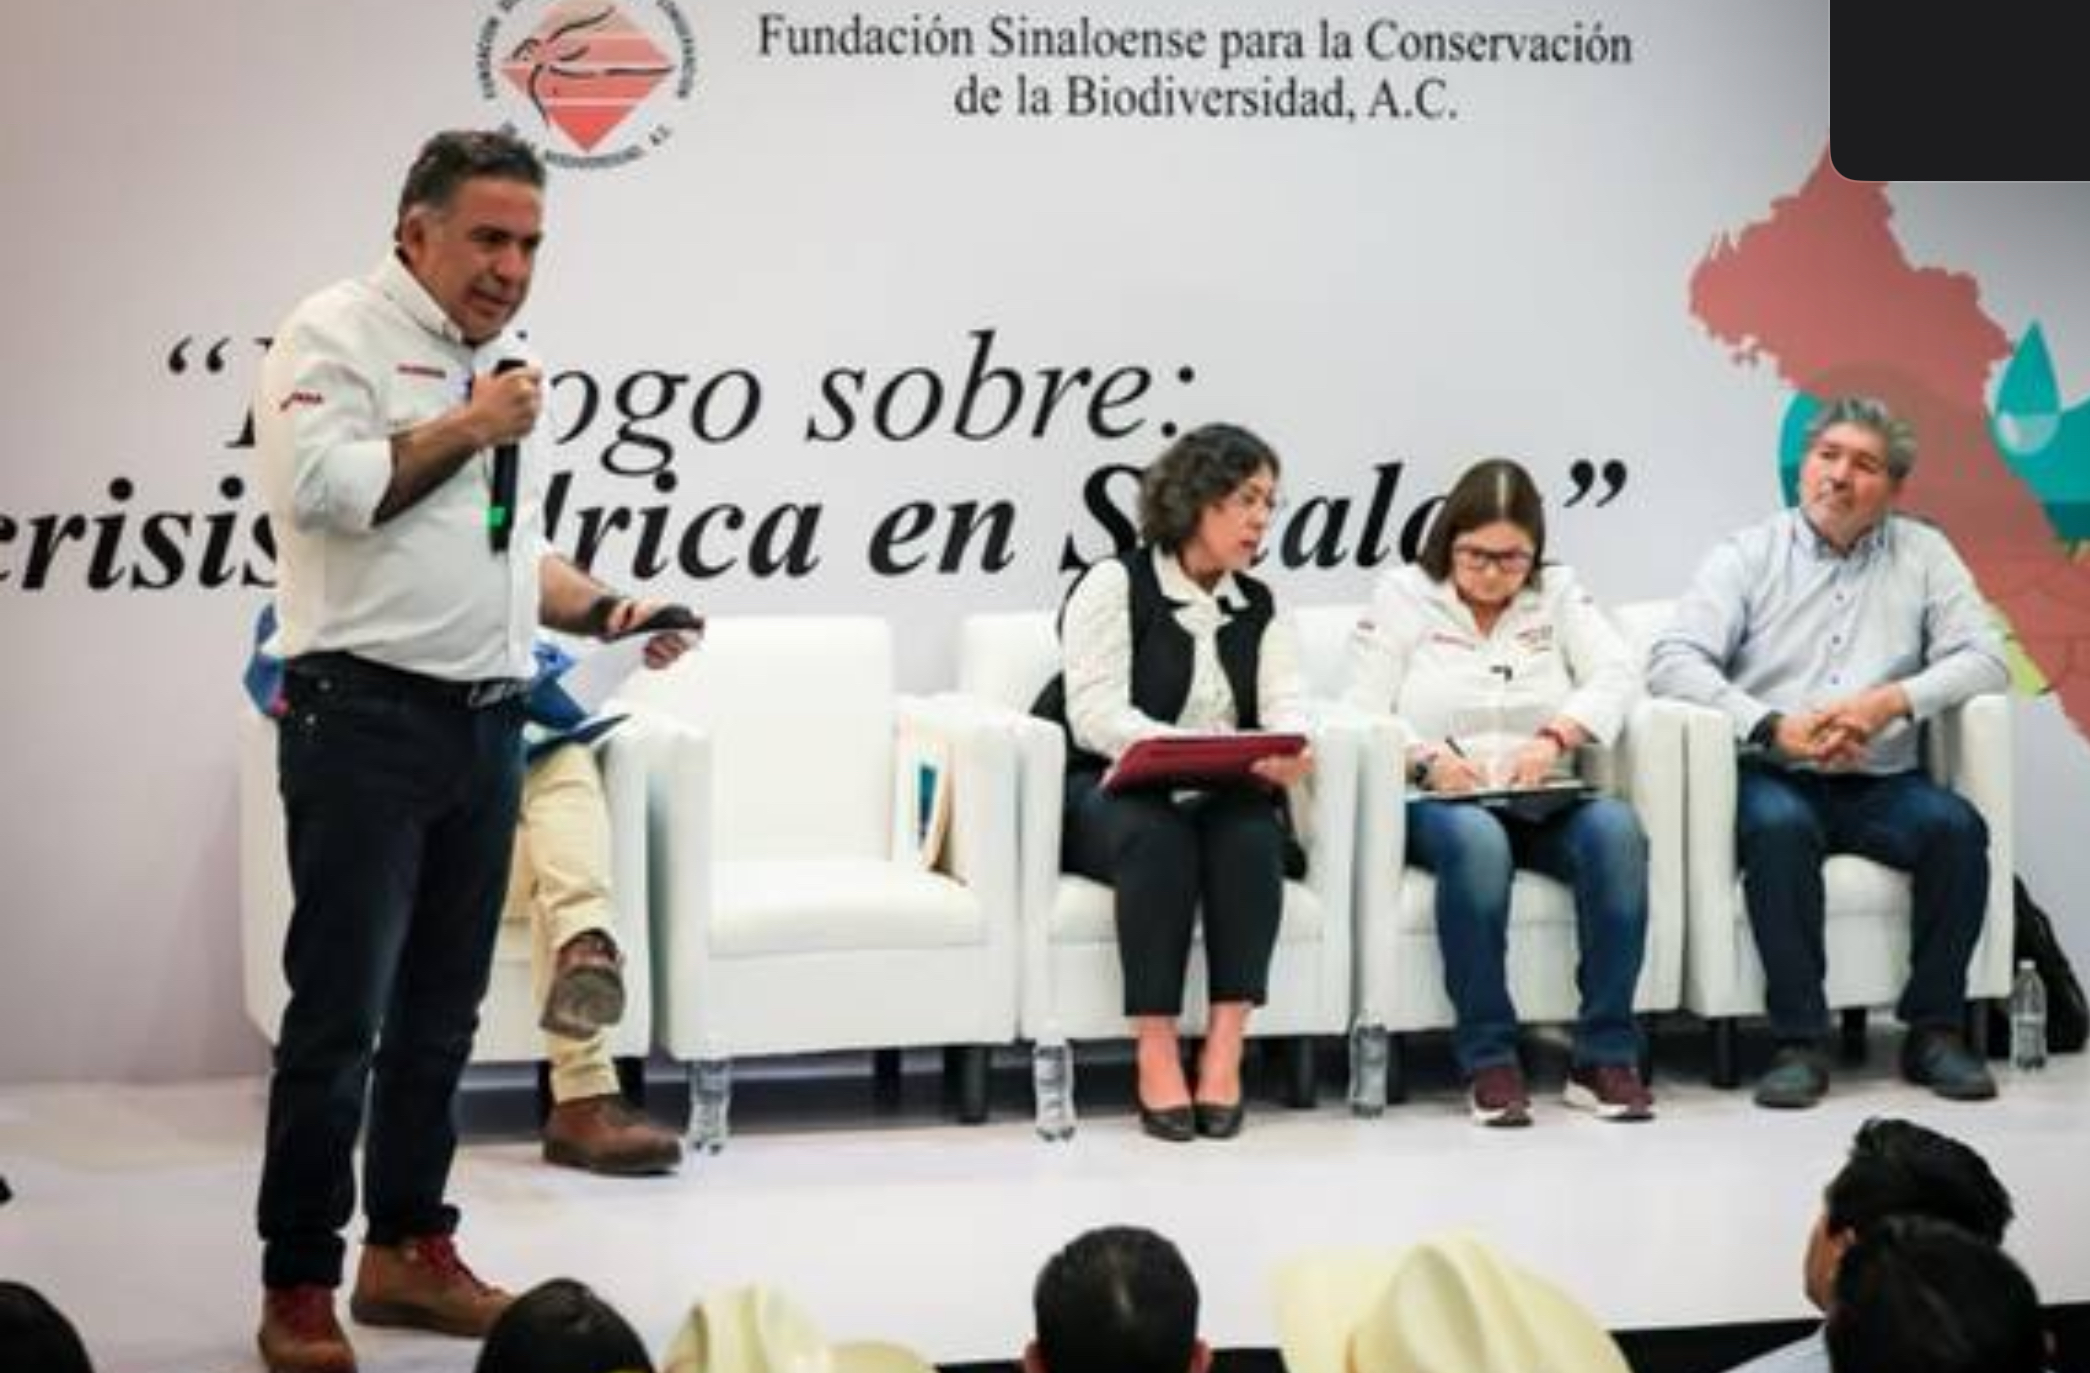 Sinaloa – Candidatos al Senado se comprometen con el derecho al agua y planes hídricos (El Sol de Sinaloa)